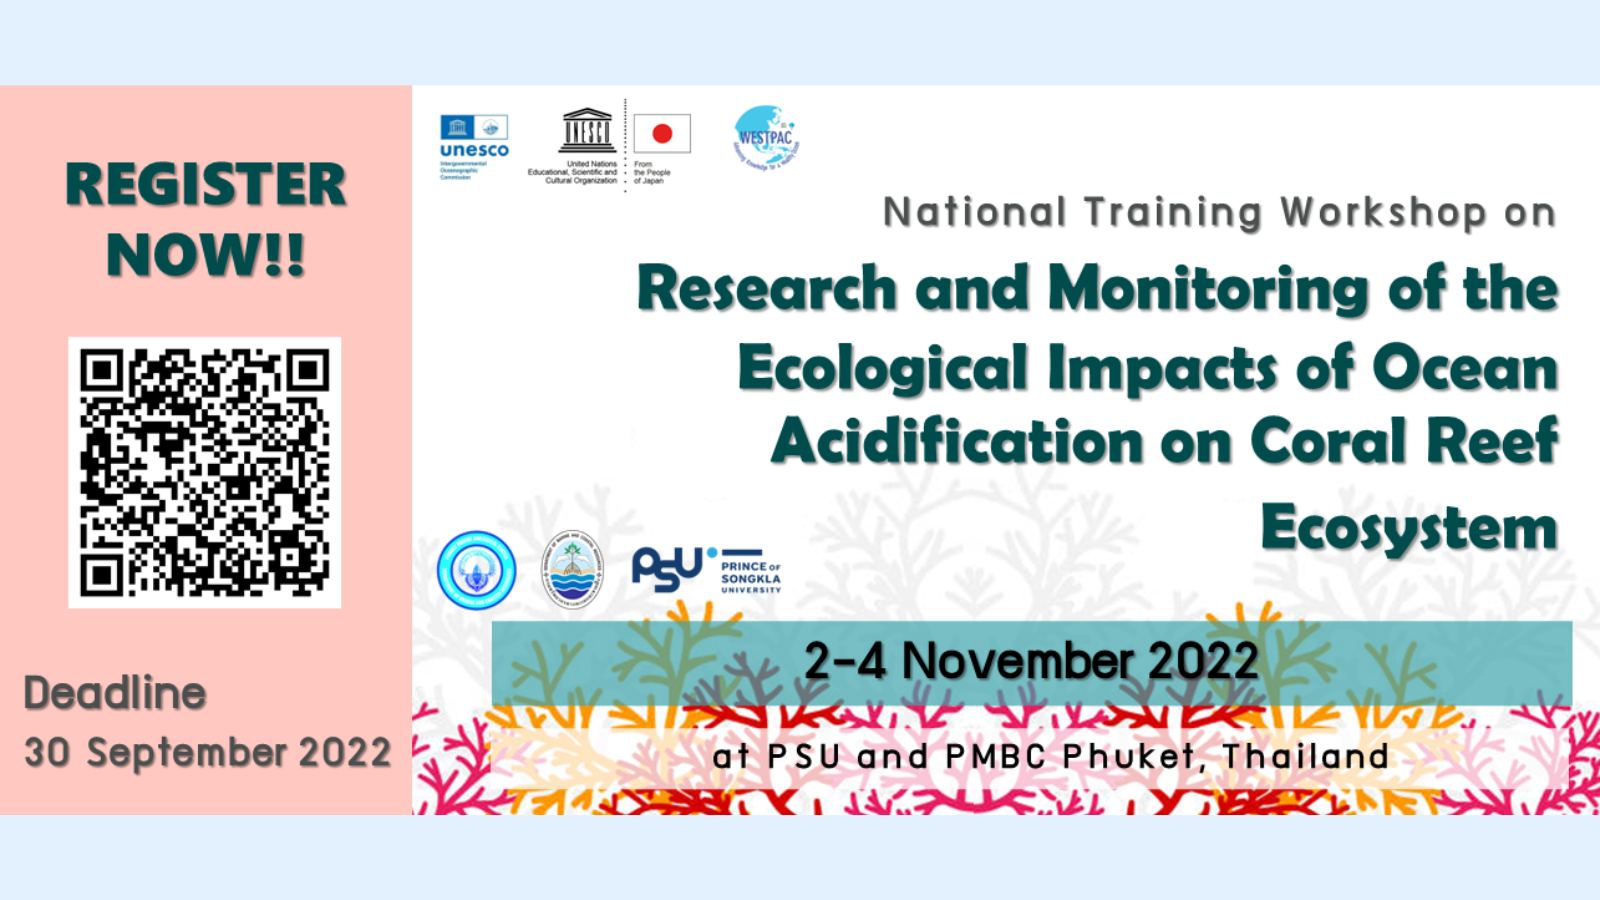 ขอเชิญร่วมงานสัมมนาเชิงปฏิบัติการ “National Training Workshop on Research and Monitoring of the Ecological Impacts of Ocean Acidification on Coral Reef Ecosystem”